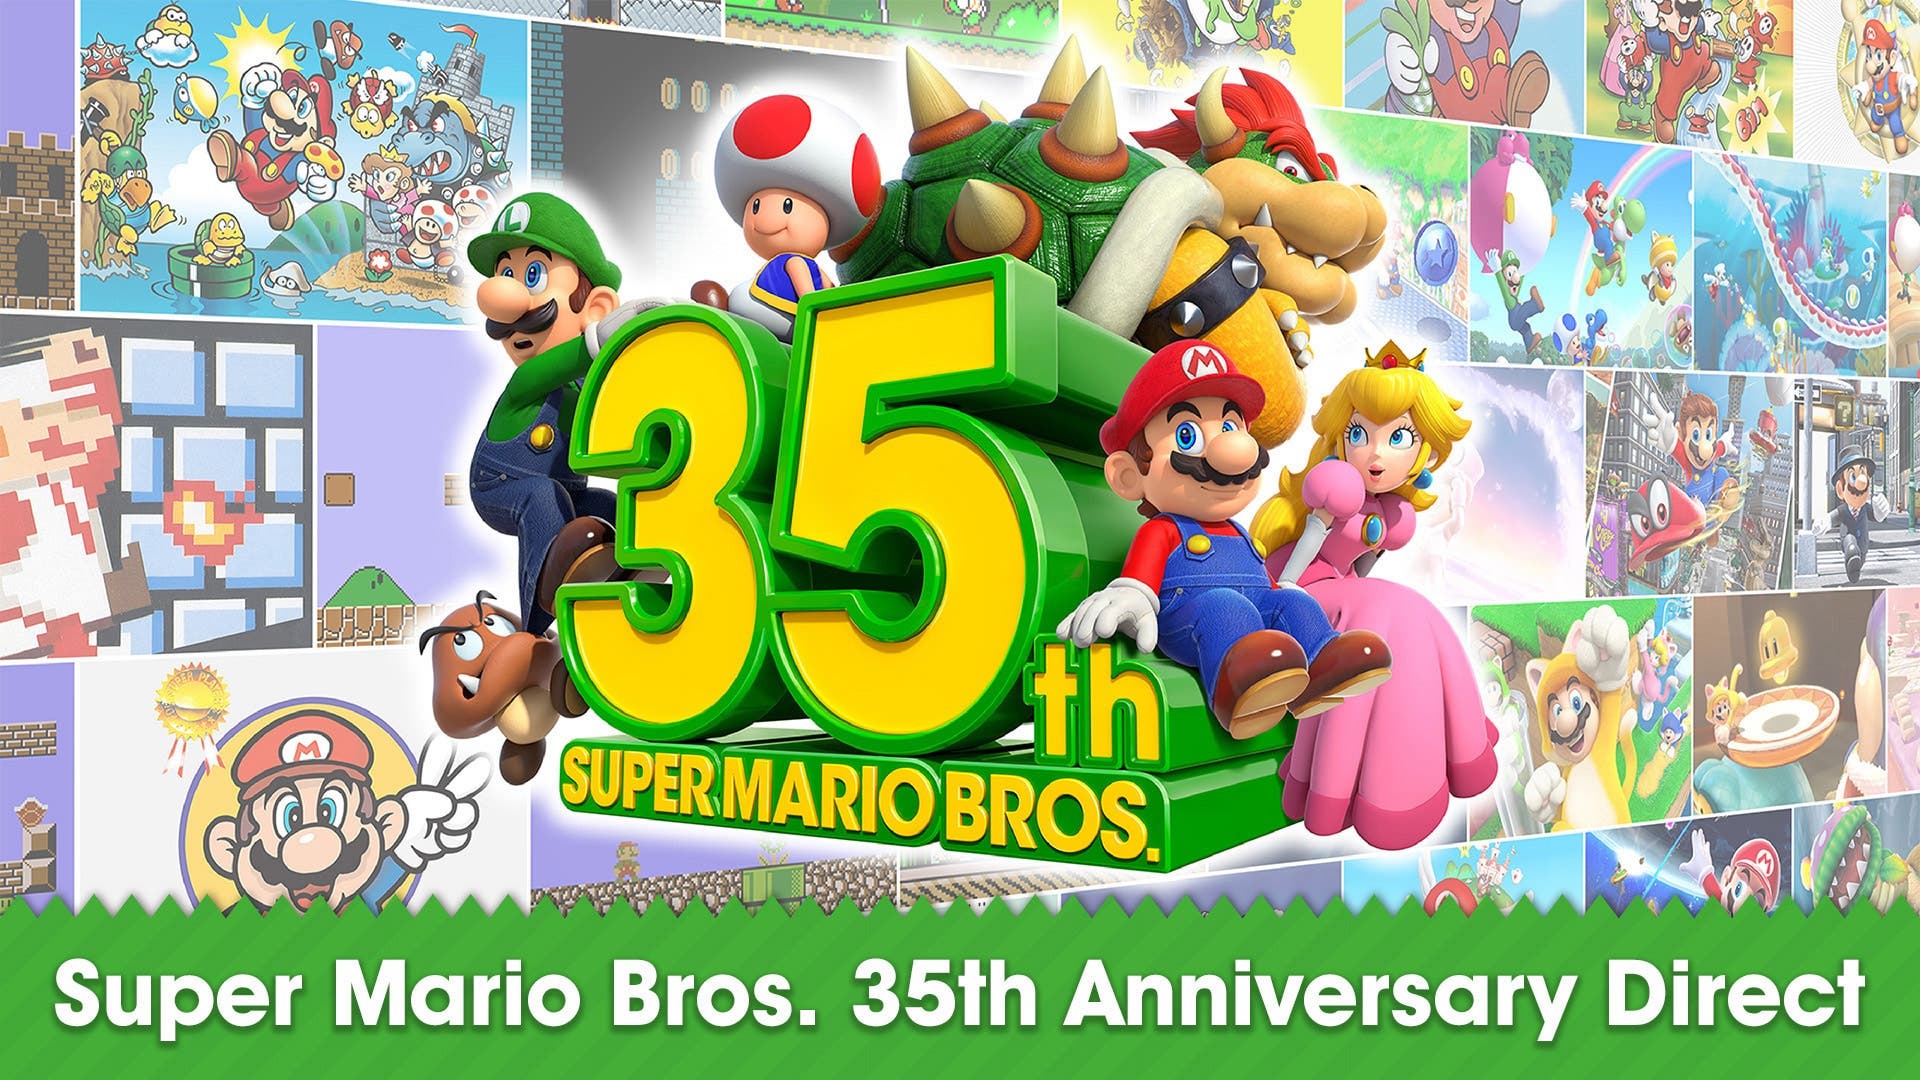 El Super Mario Bros. 35th Anniversary Direct de Nintendo supera los 8 millones de reproducciones en YouTube